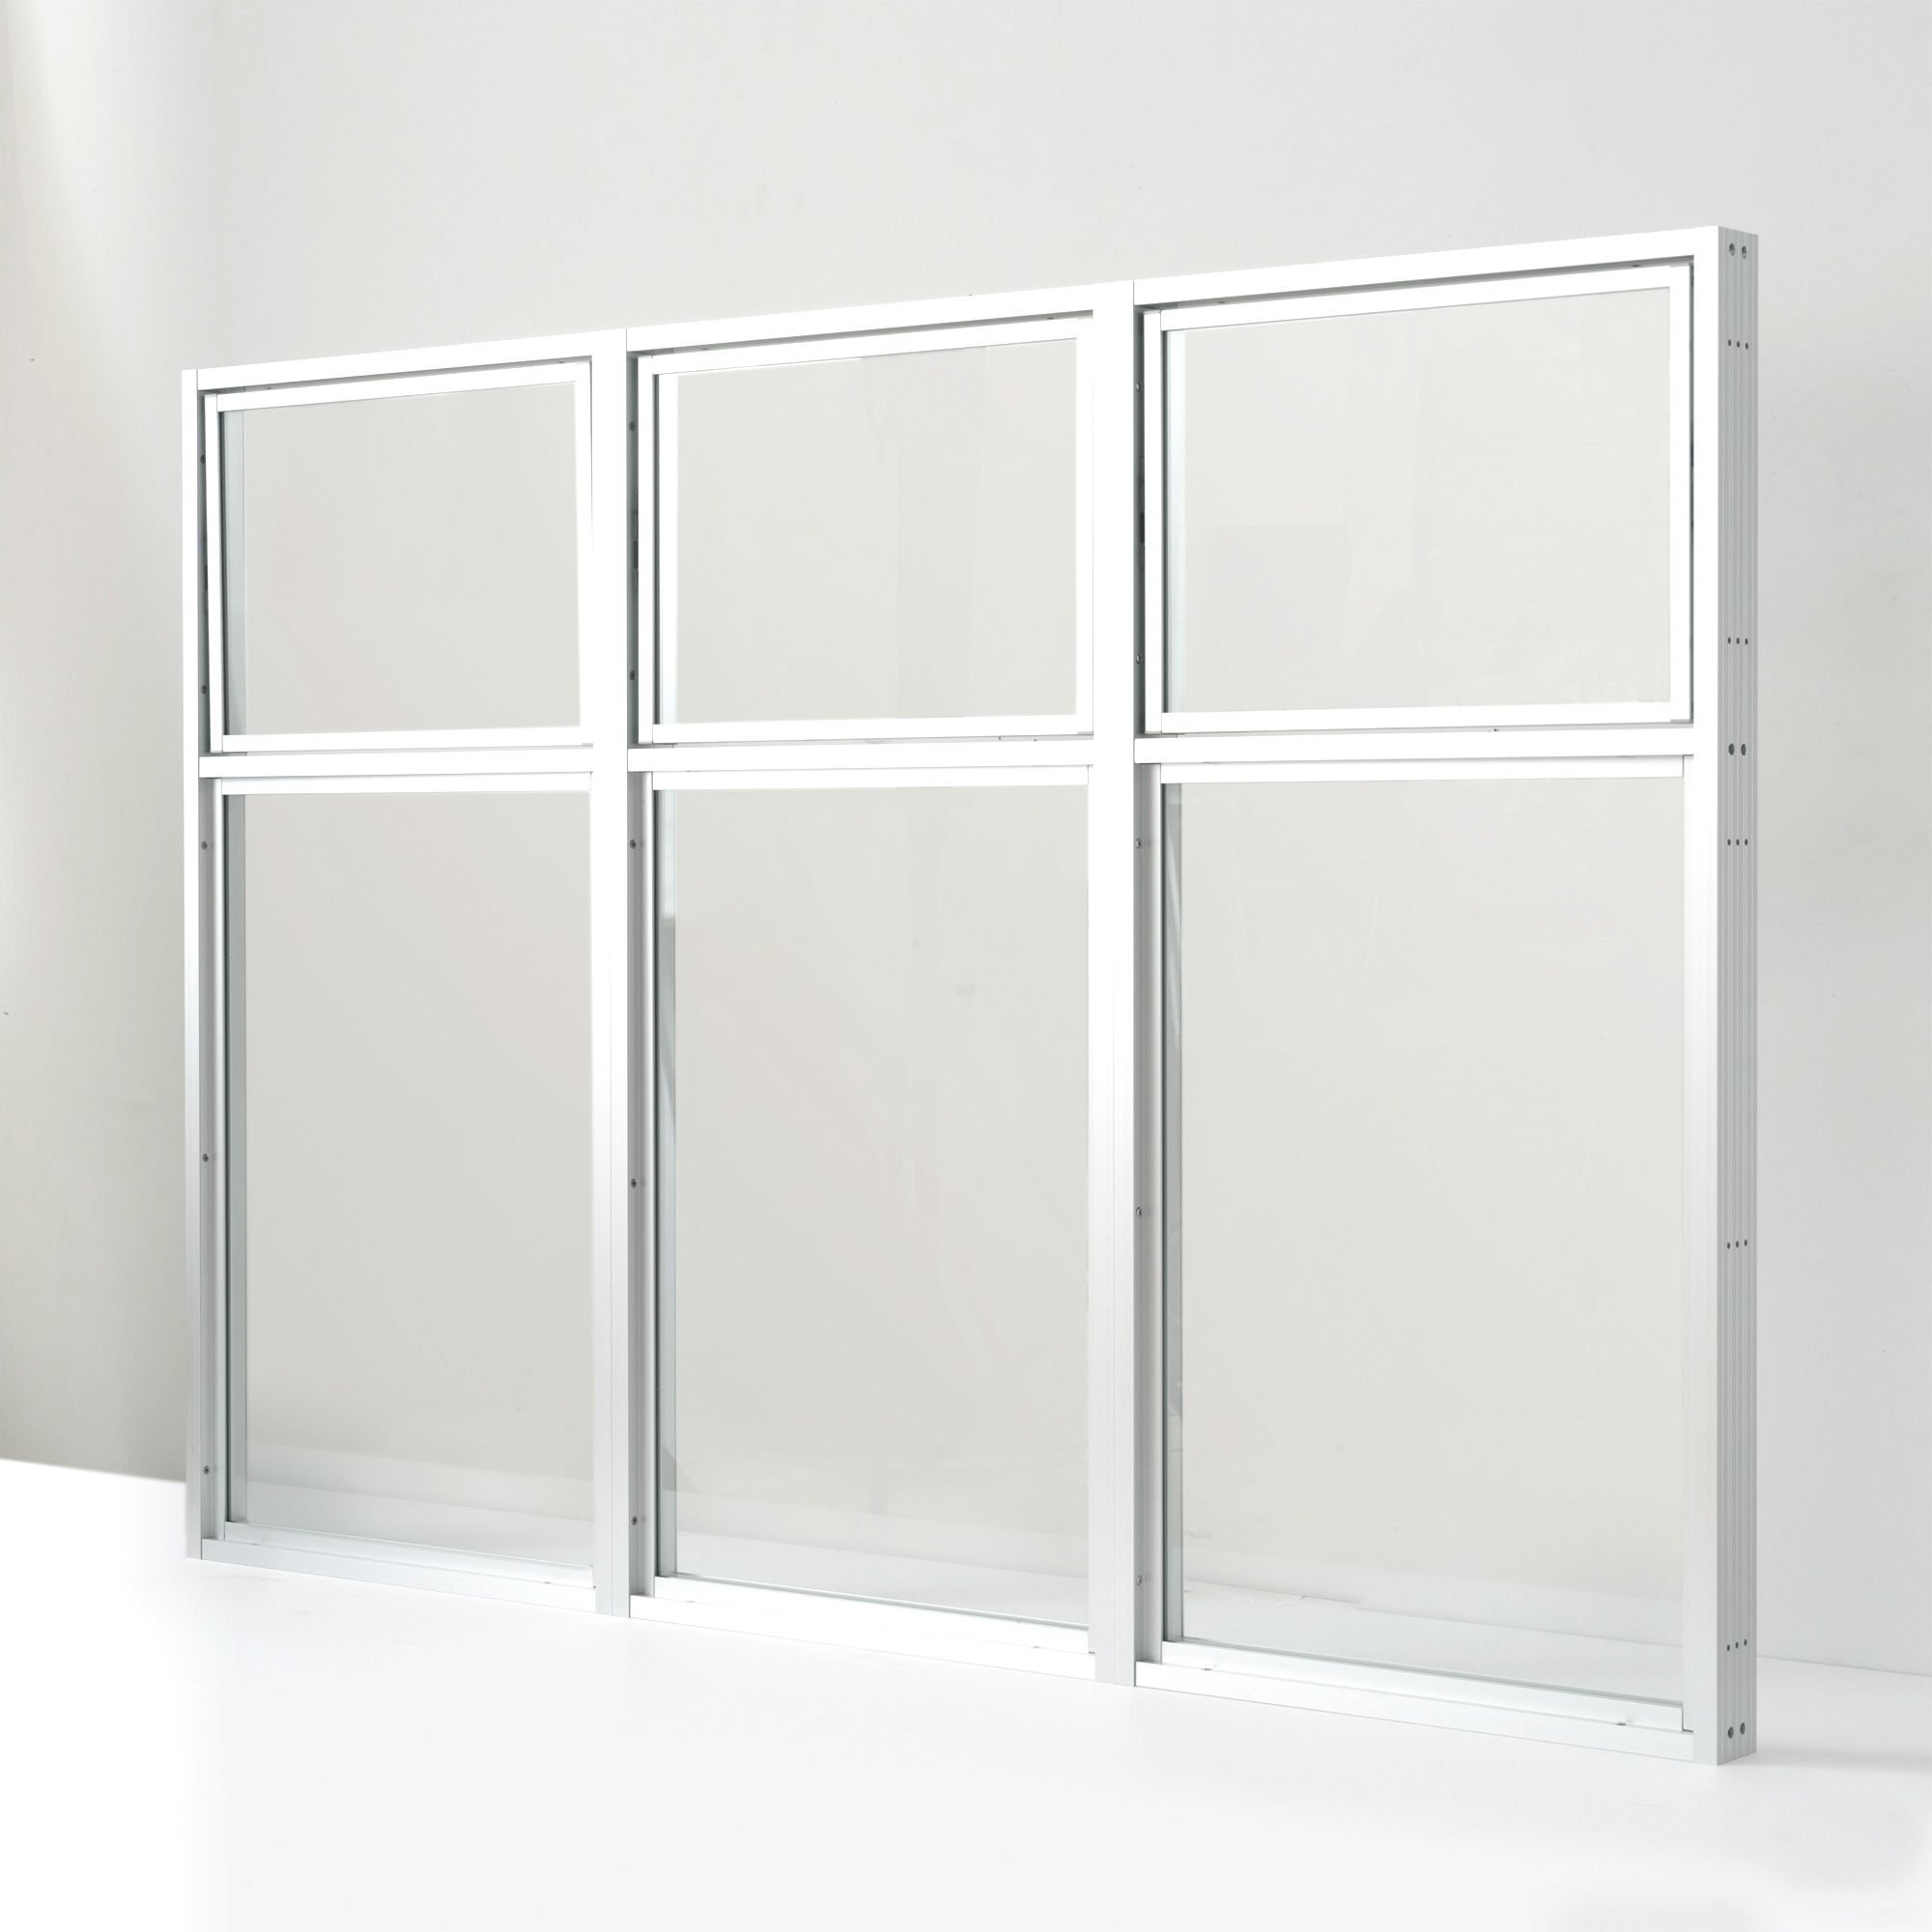 室内アルミサッシ FIX窓 シルバー 樹脂パネル DW-DR013-04-G201 回転窓（上）＋FIX窓（下）の3連結　W1500 H1050（W500 上H350 下H700）クリアガラス